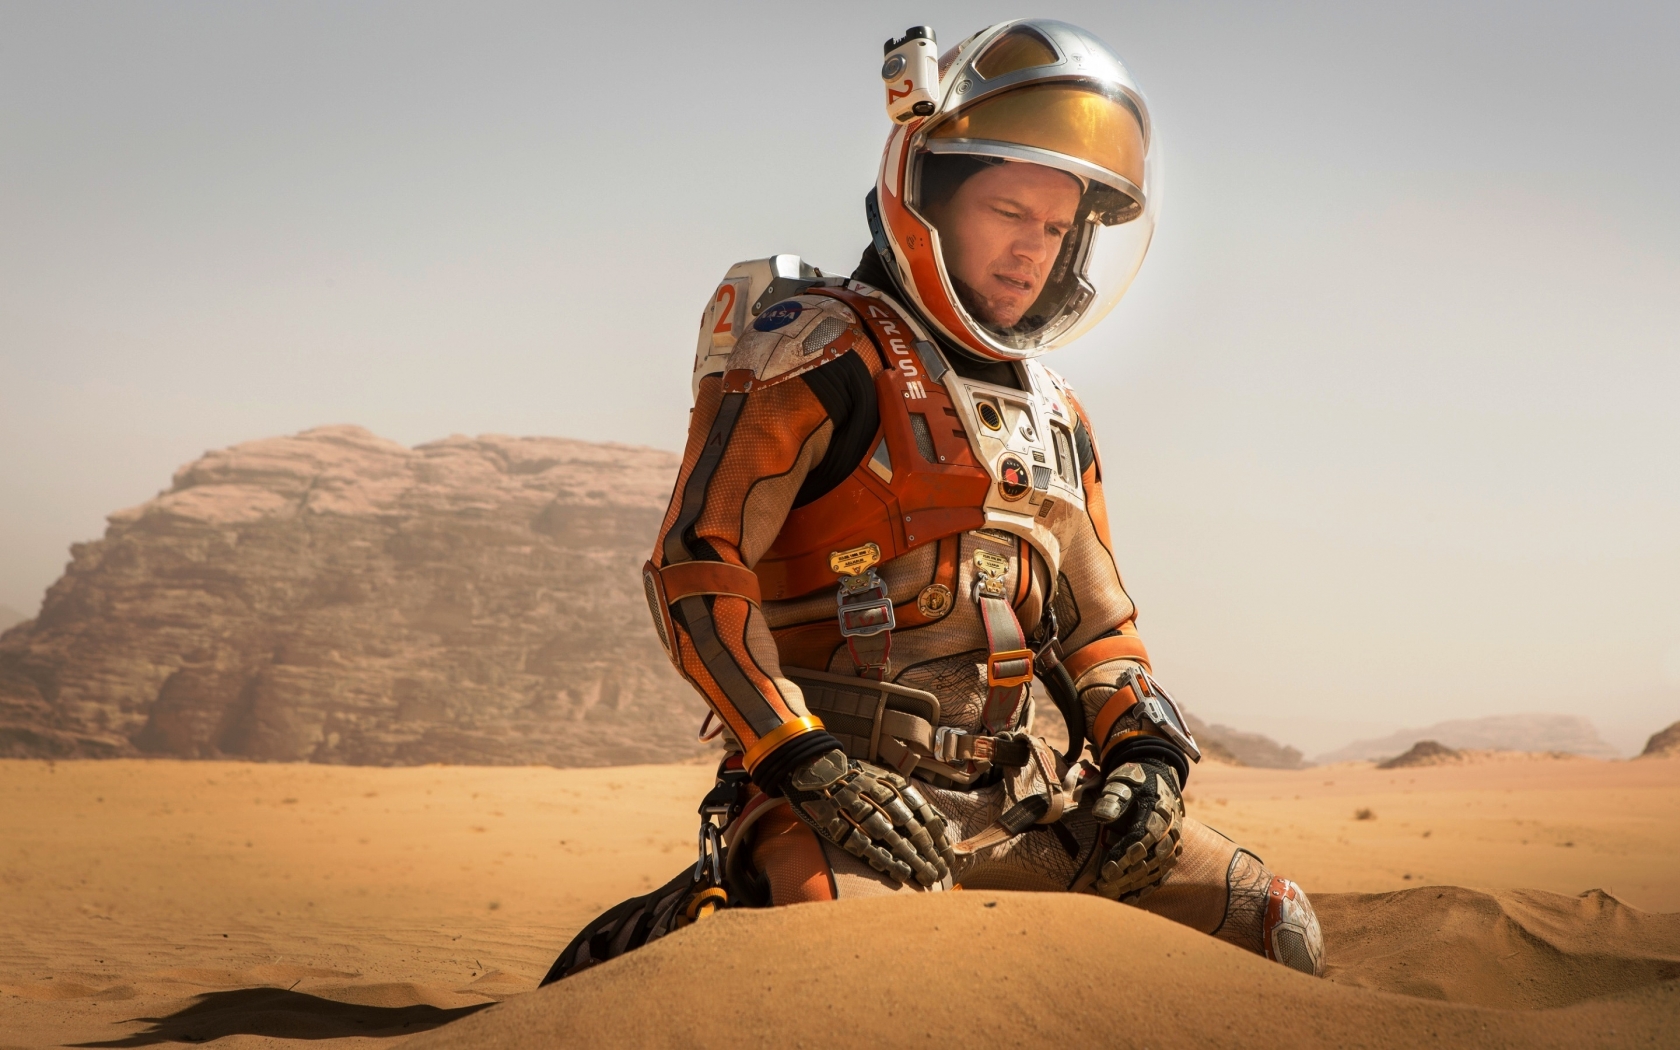 The Martian Matt Damon for 1680 x 1050 widescreen resolution